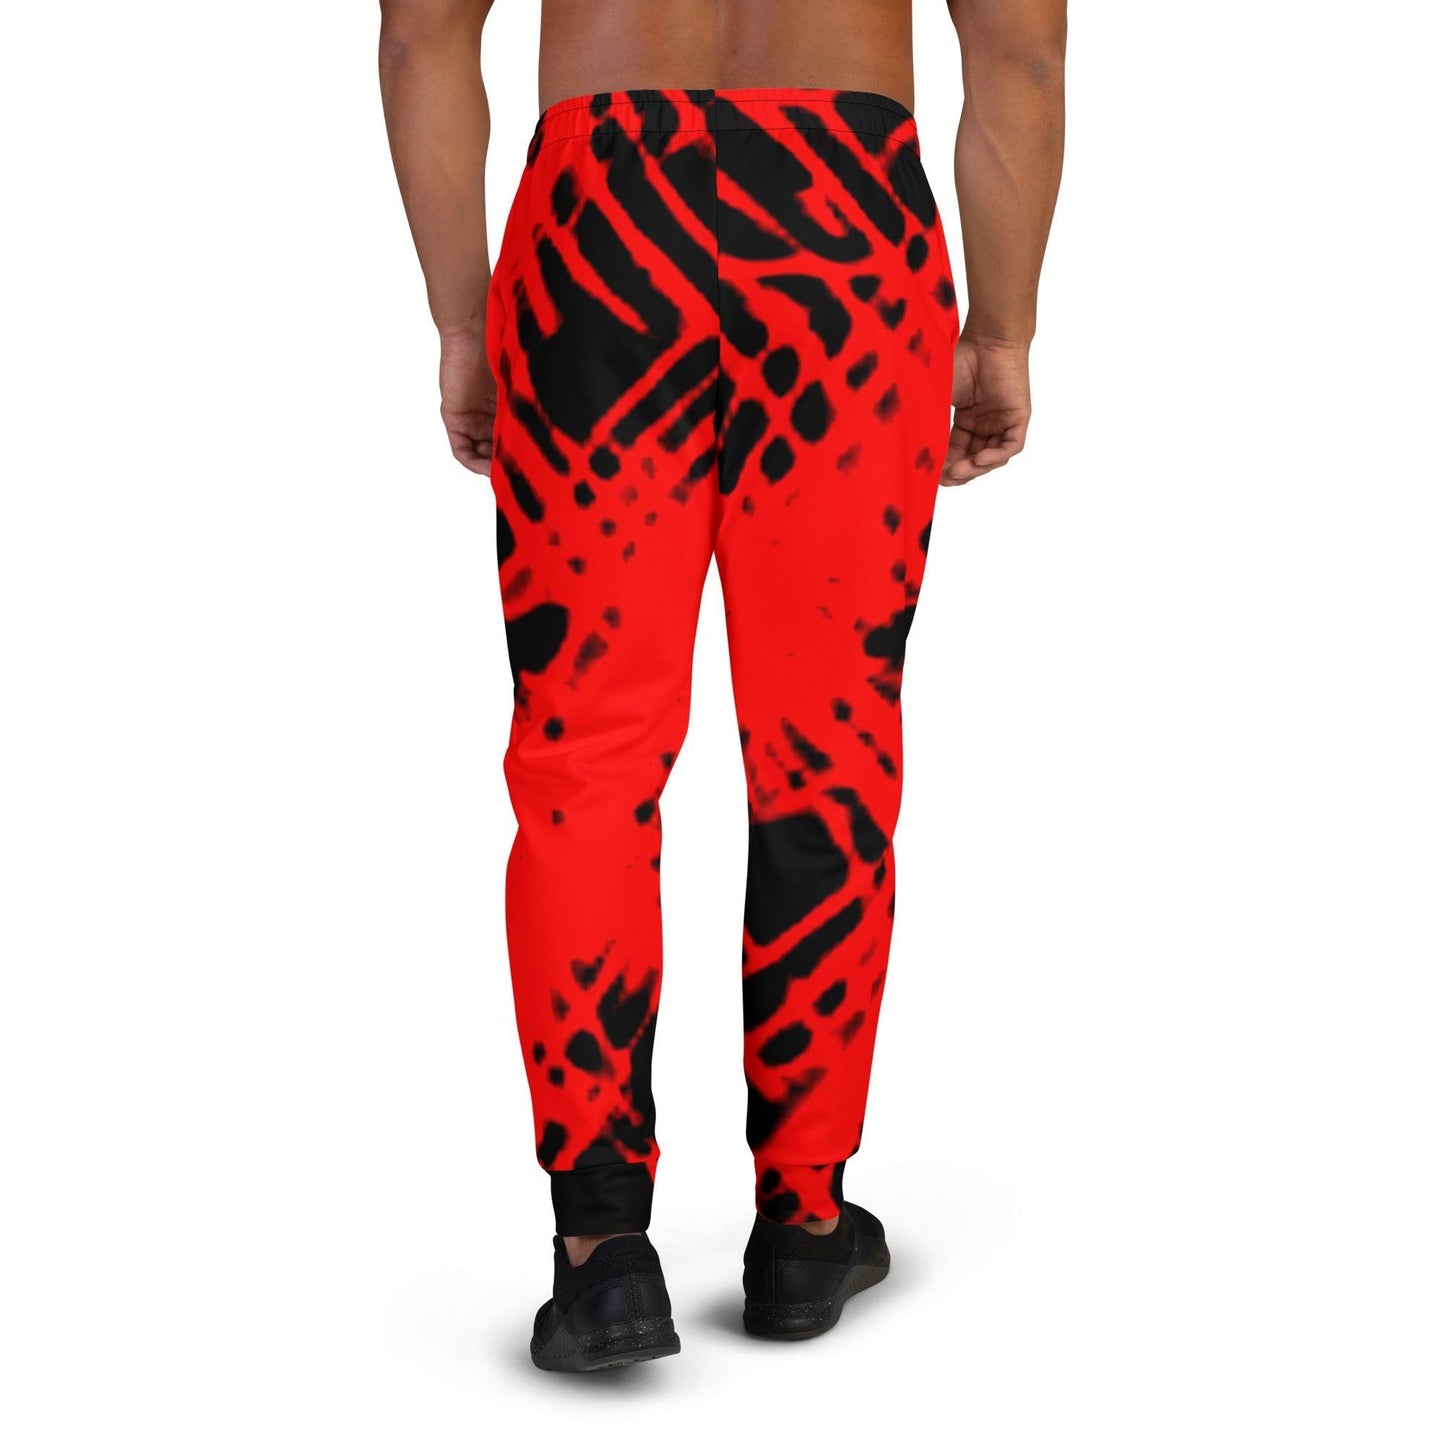 Red And Black Co-Lab Men's Joggers Jogging pants - Lizard Vigilante